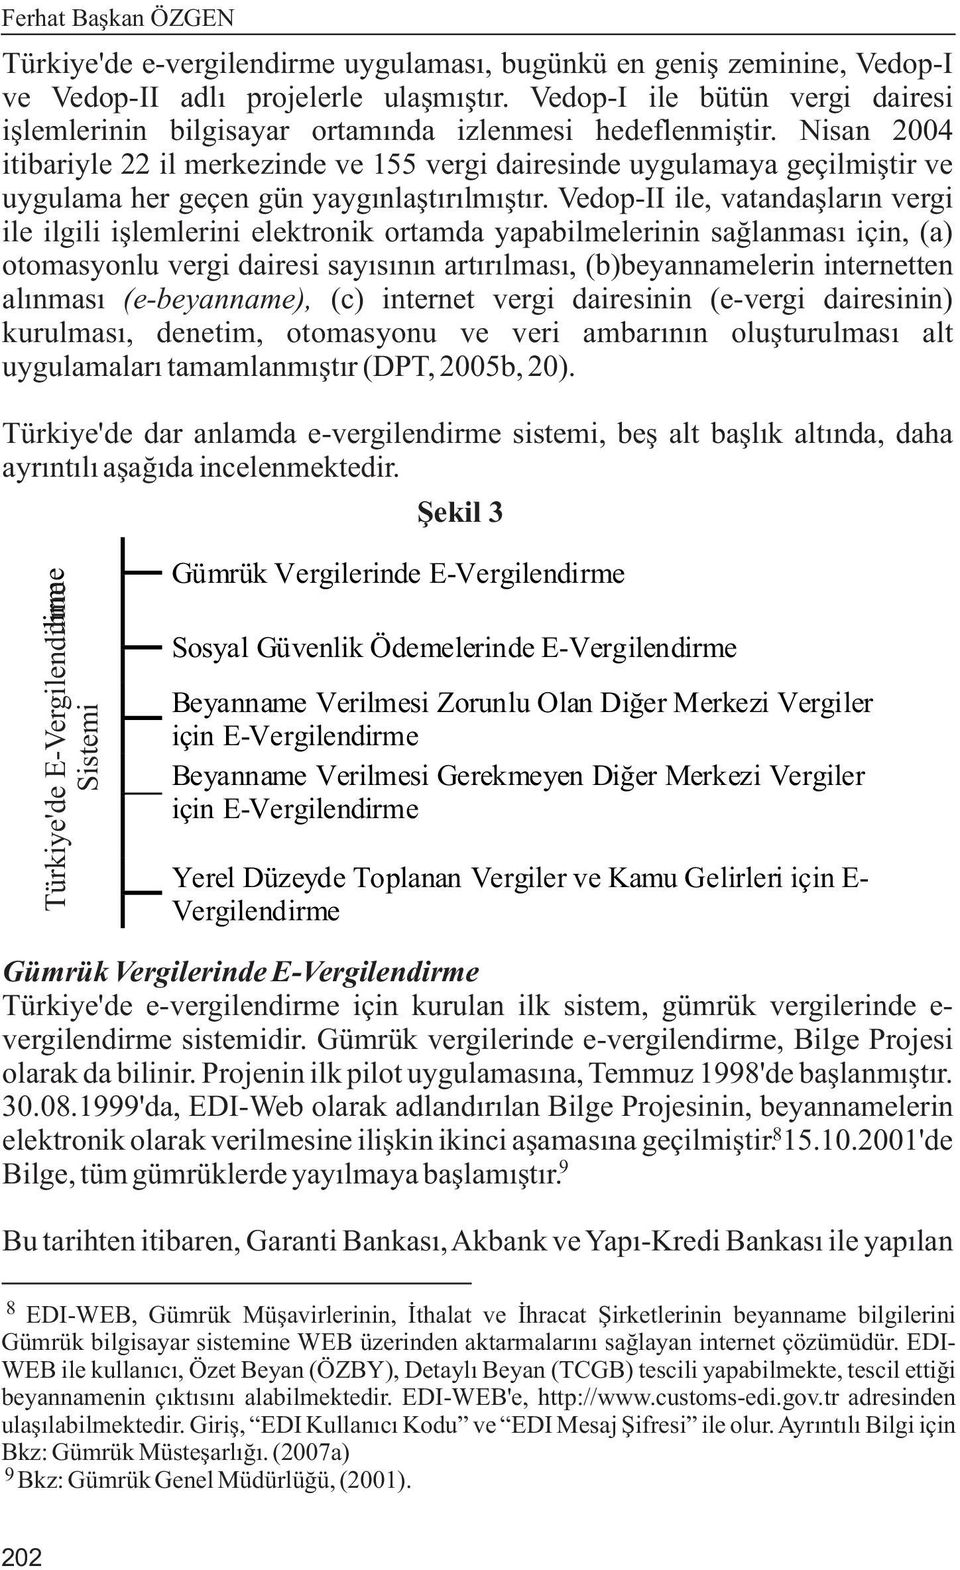 Nisan 2004 itibariyle 22 il merkezinde ve 155 vergi dairesinde uygulamaya geçilmiþtir ve uygulama her geçen gün yaygýnlaþtýrýlmýþtýr.